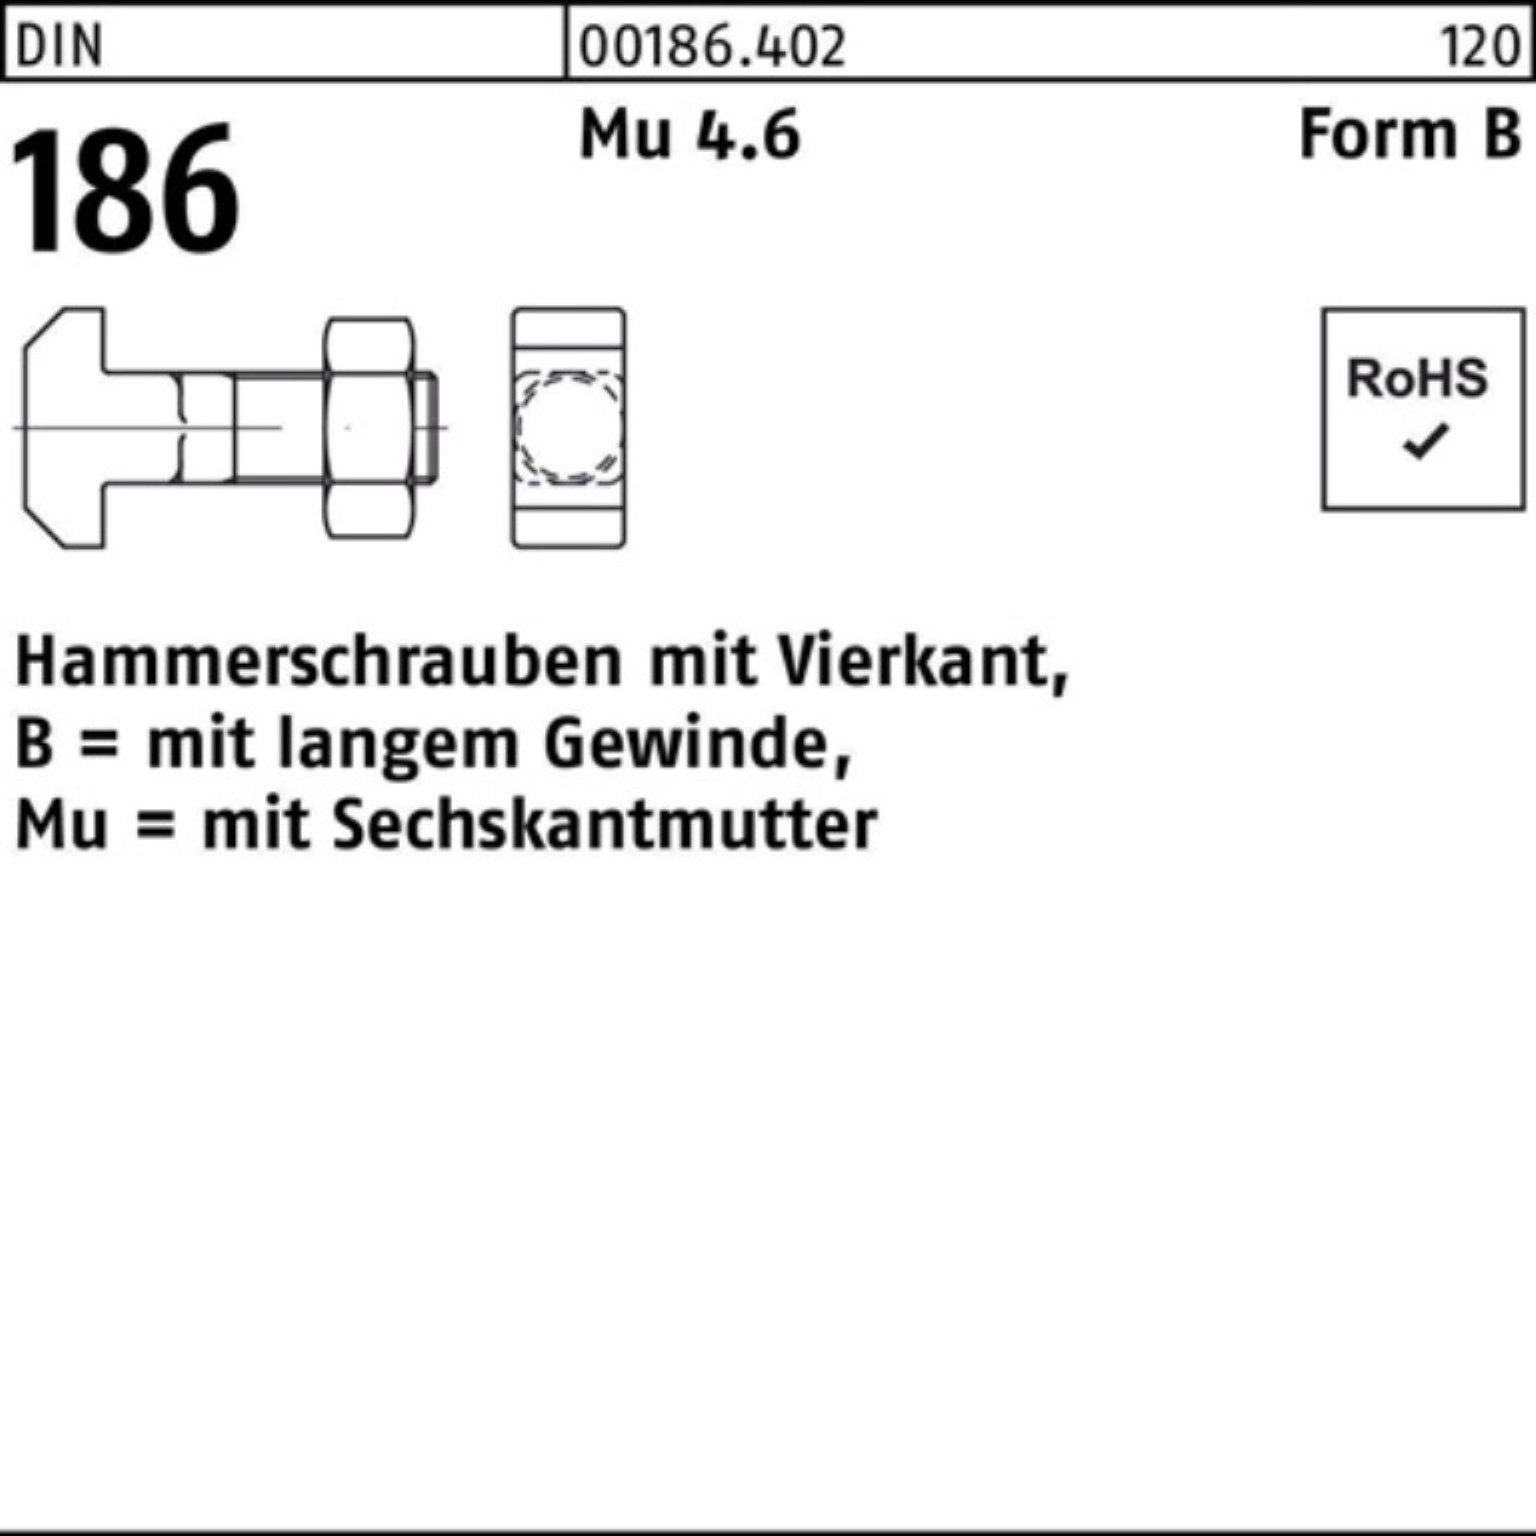 6-ktmutter Hammerschraube BM Reyher Pack 12x Vierkant 186 50 Schraube DIN FormB 100er